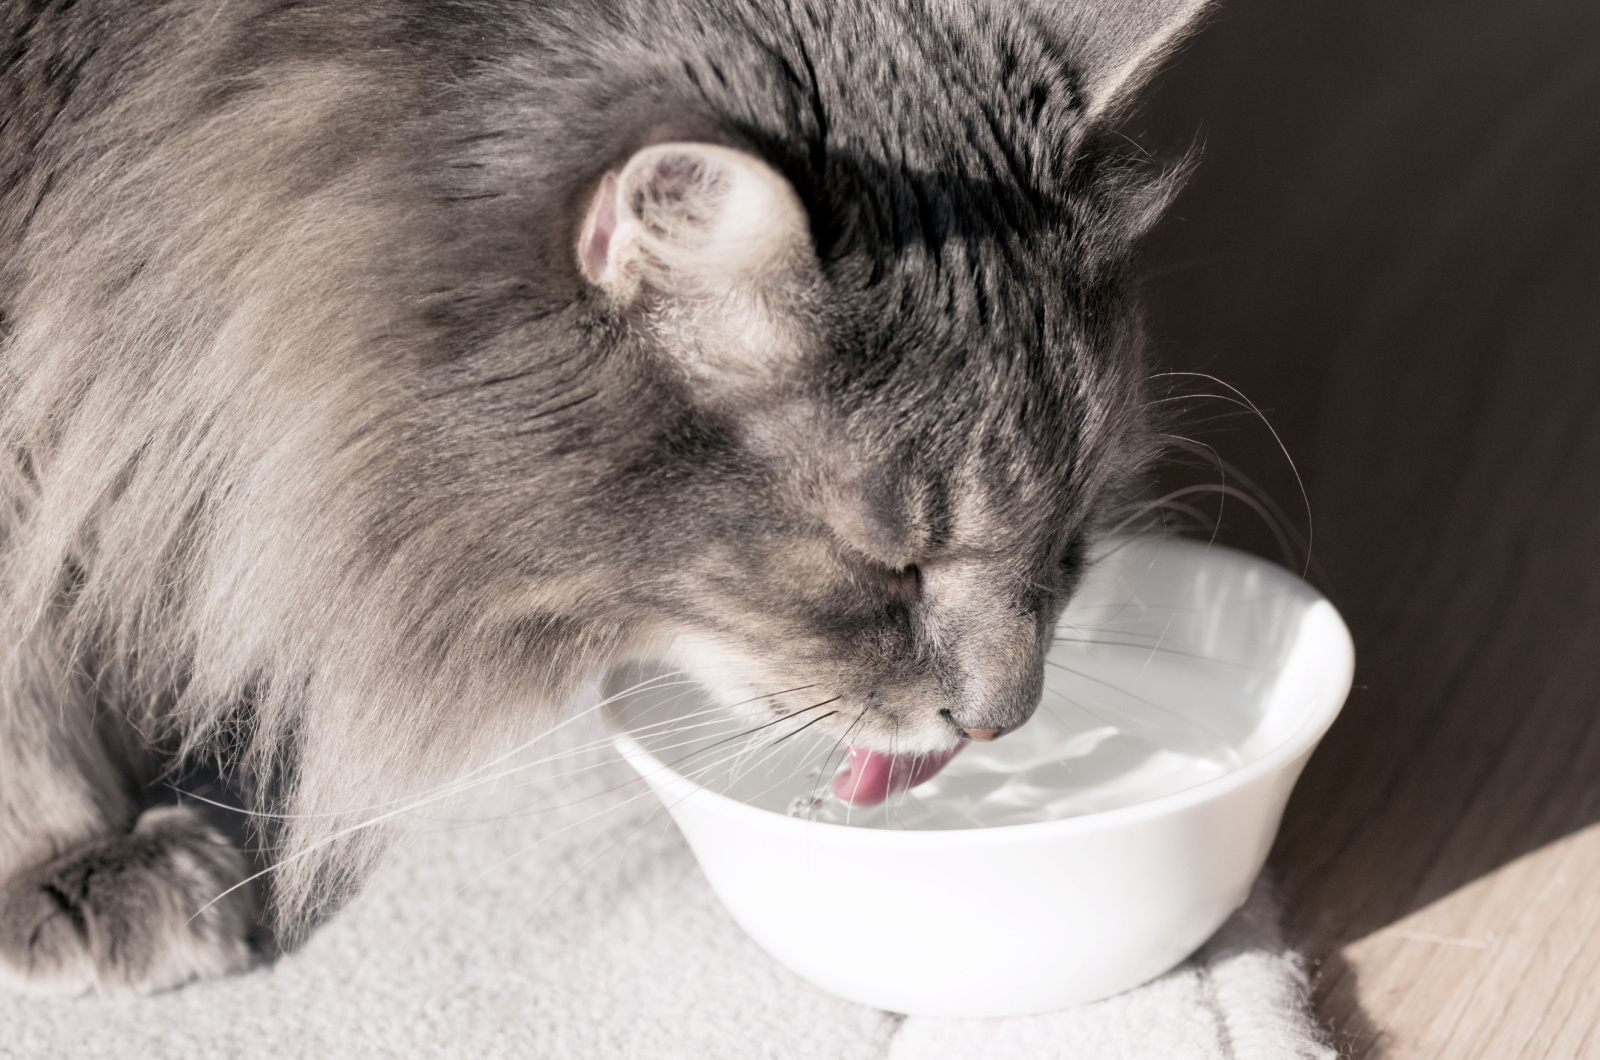 grijze kat die water drinkt uit een witte kom